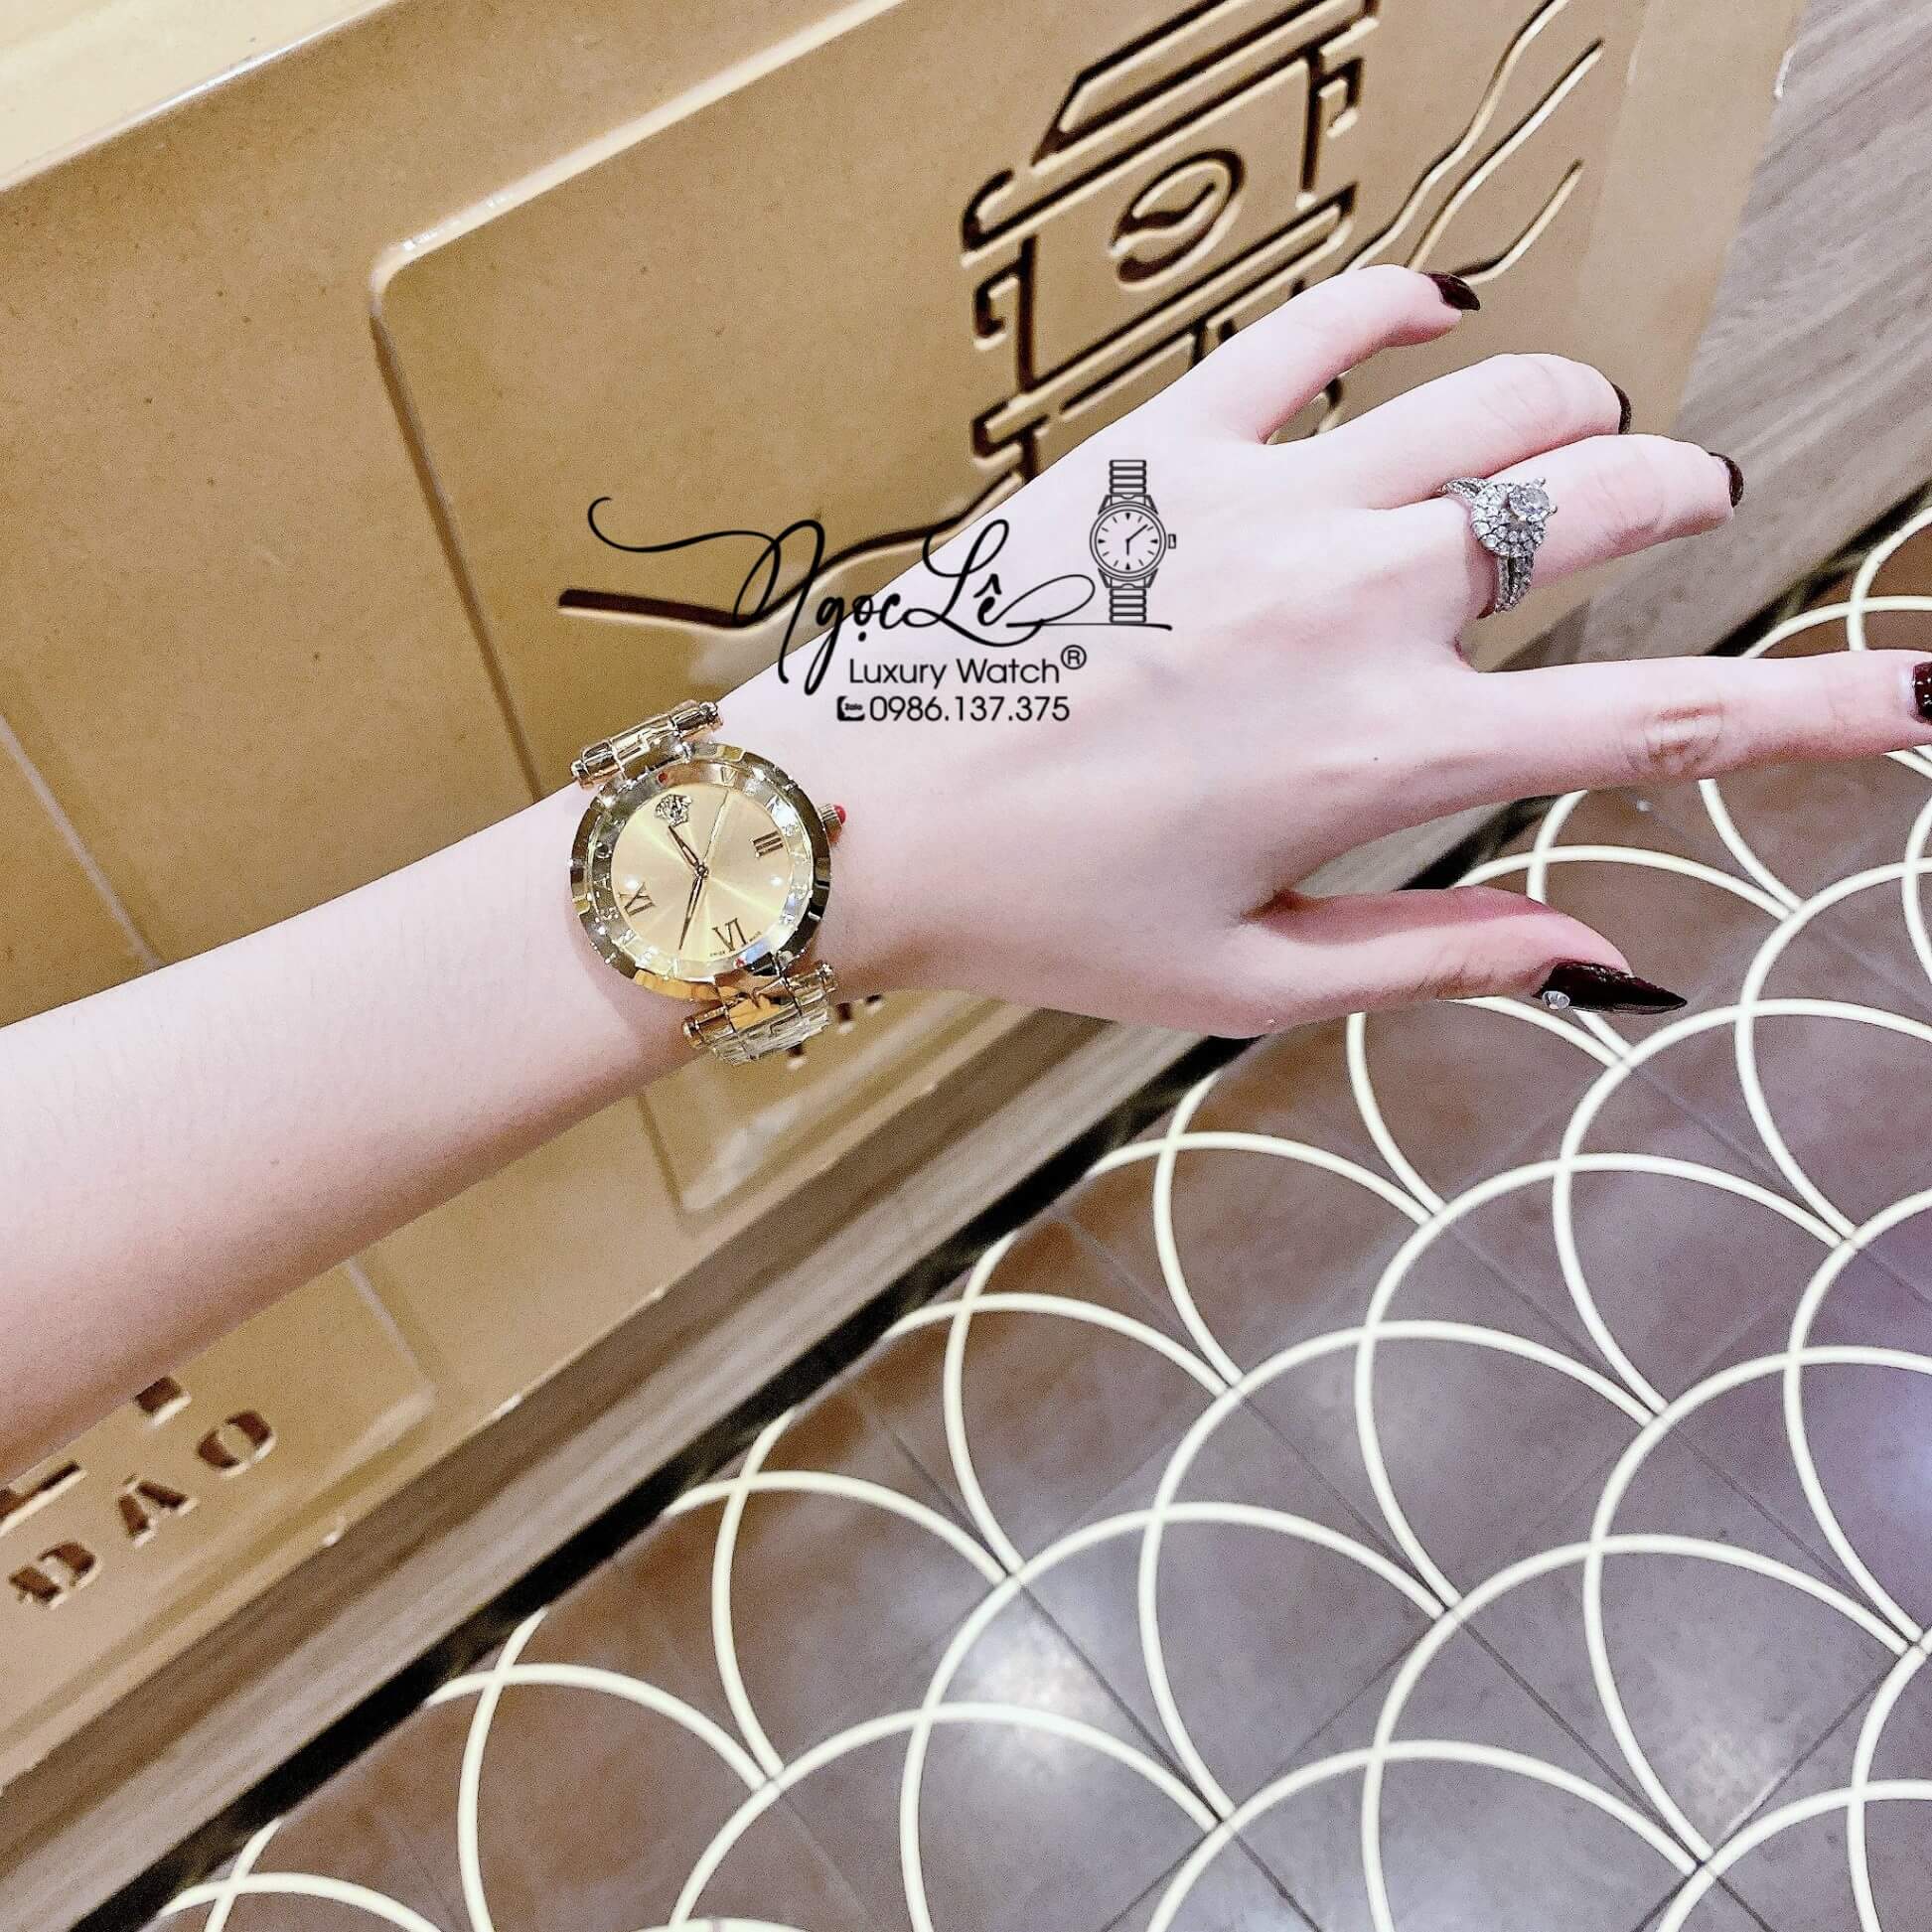 Đồng Hồ Nữ Versace Revive Dây Kim Loại Vàng Mặt Vàng Size 35mm Máy Thụy Sỹ